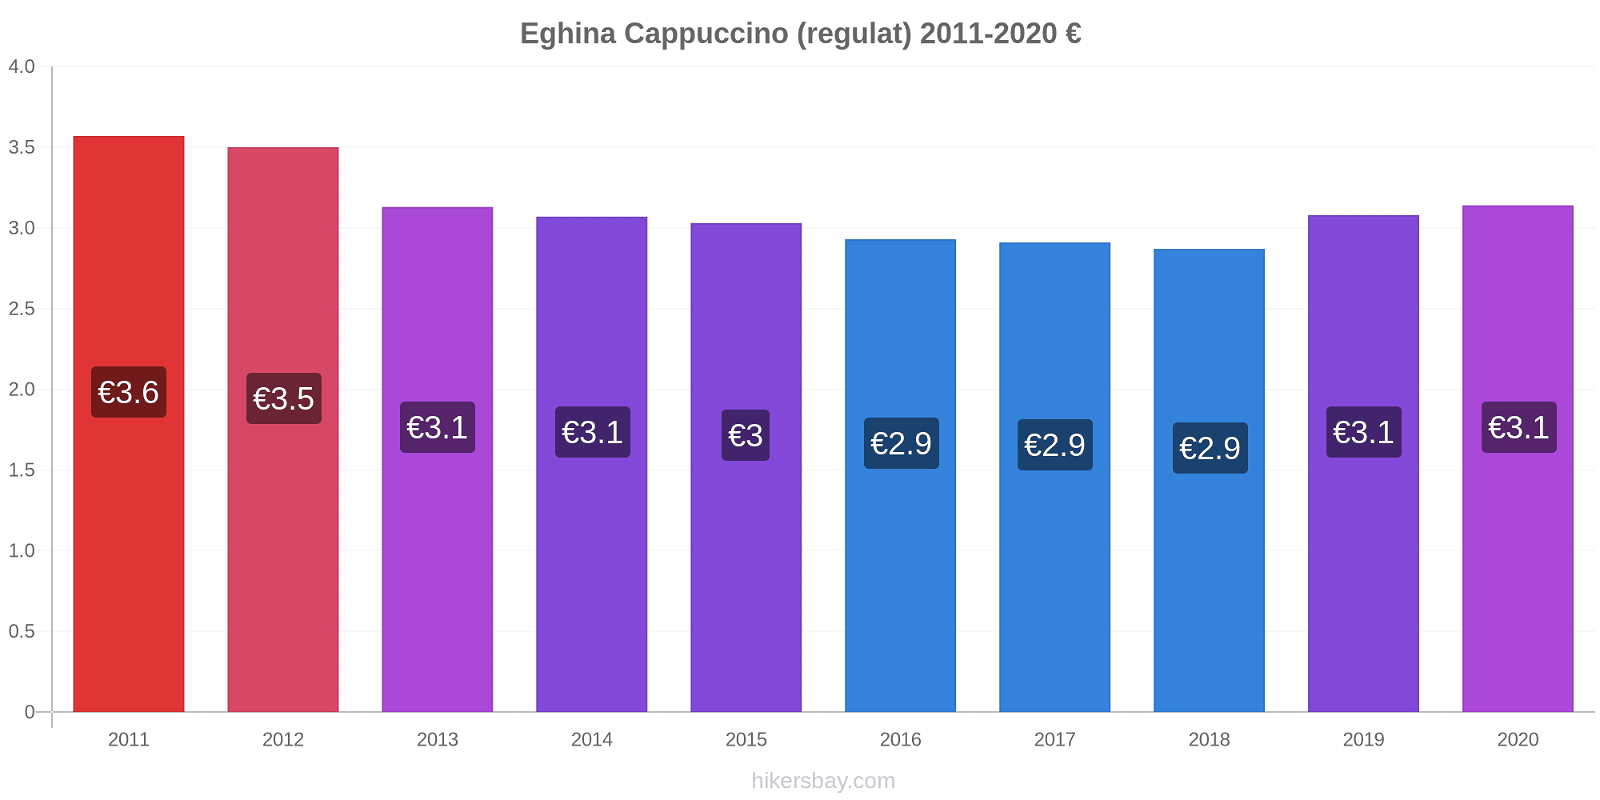 Eghina modificări de preț Cappuccino (regulat) hikersbay.com